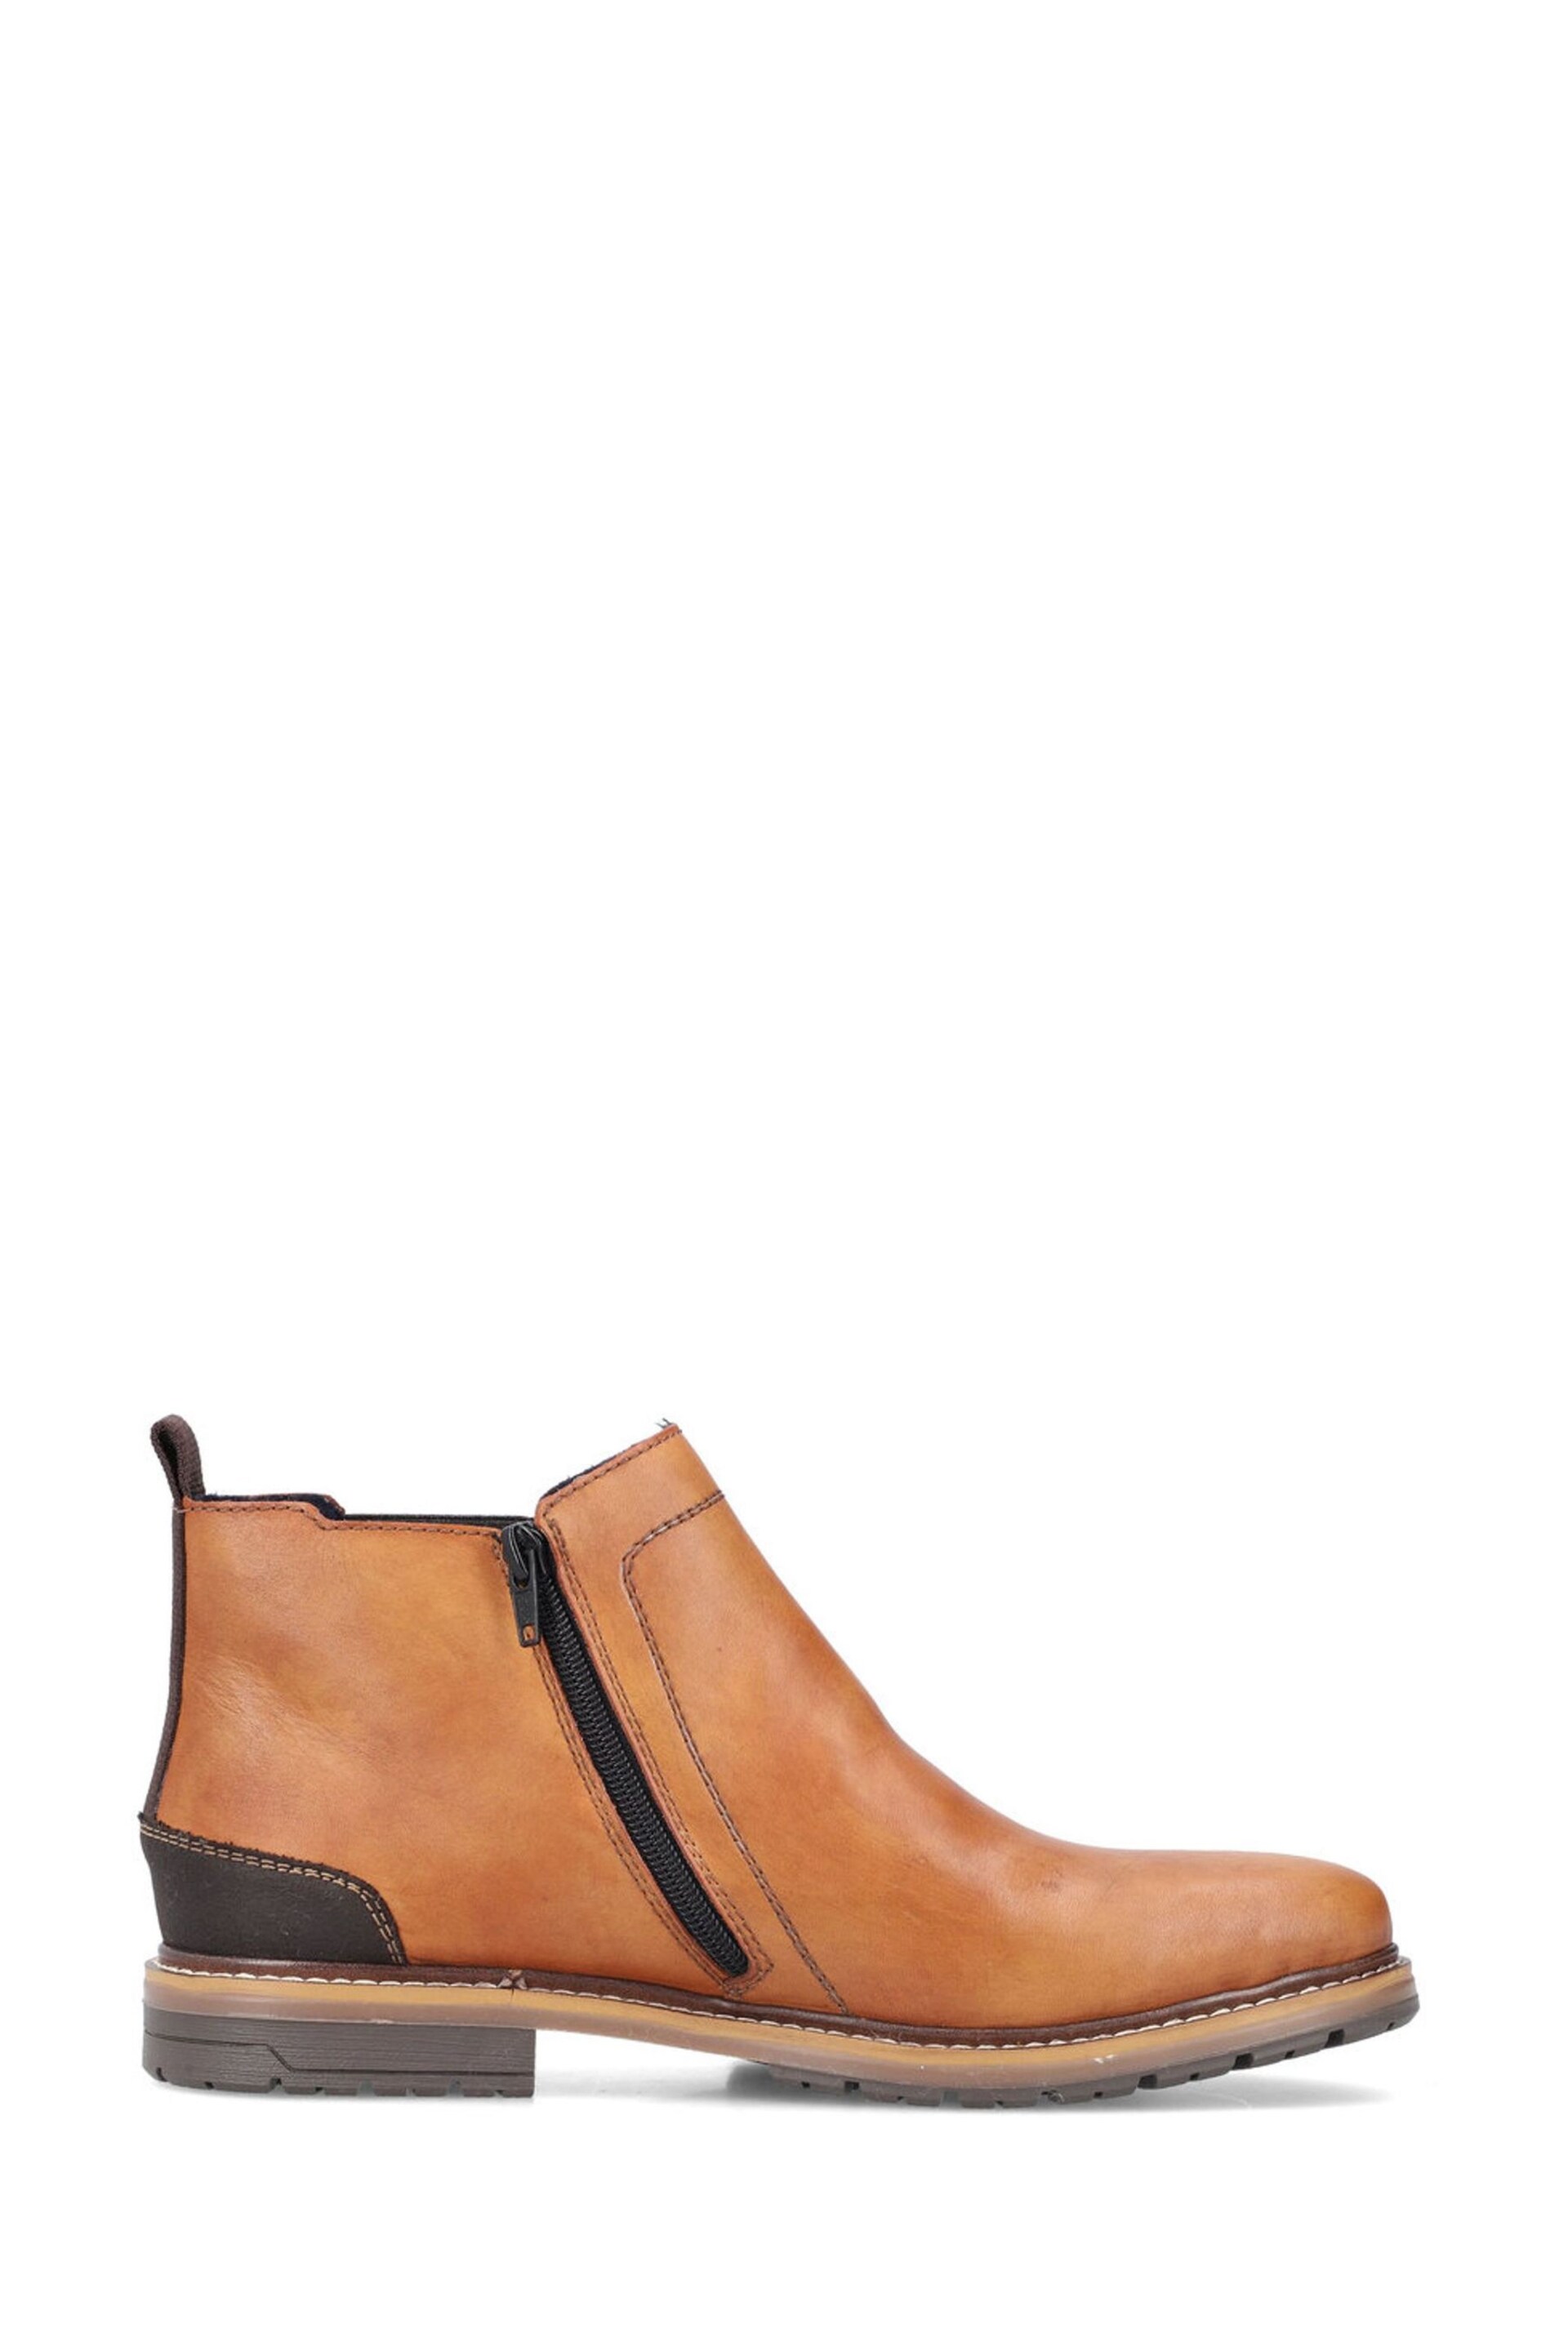 Rieker Mens Zipper Brown Boots - Image 1 of 11